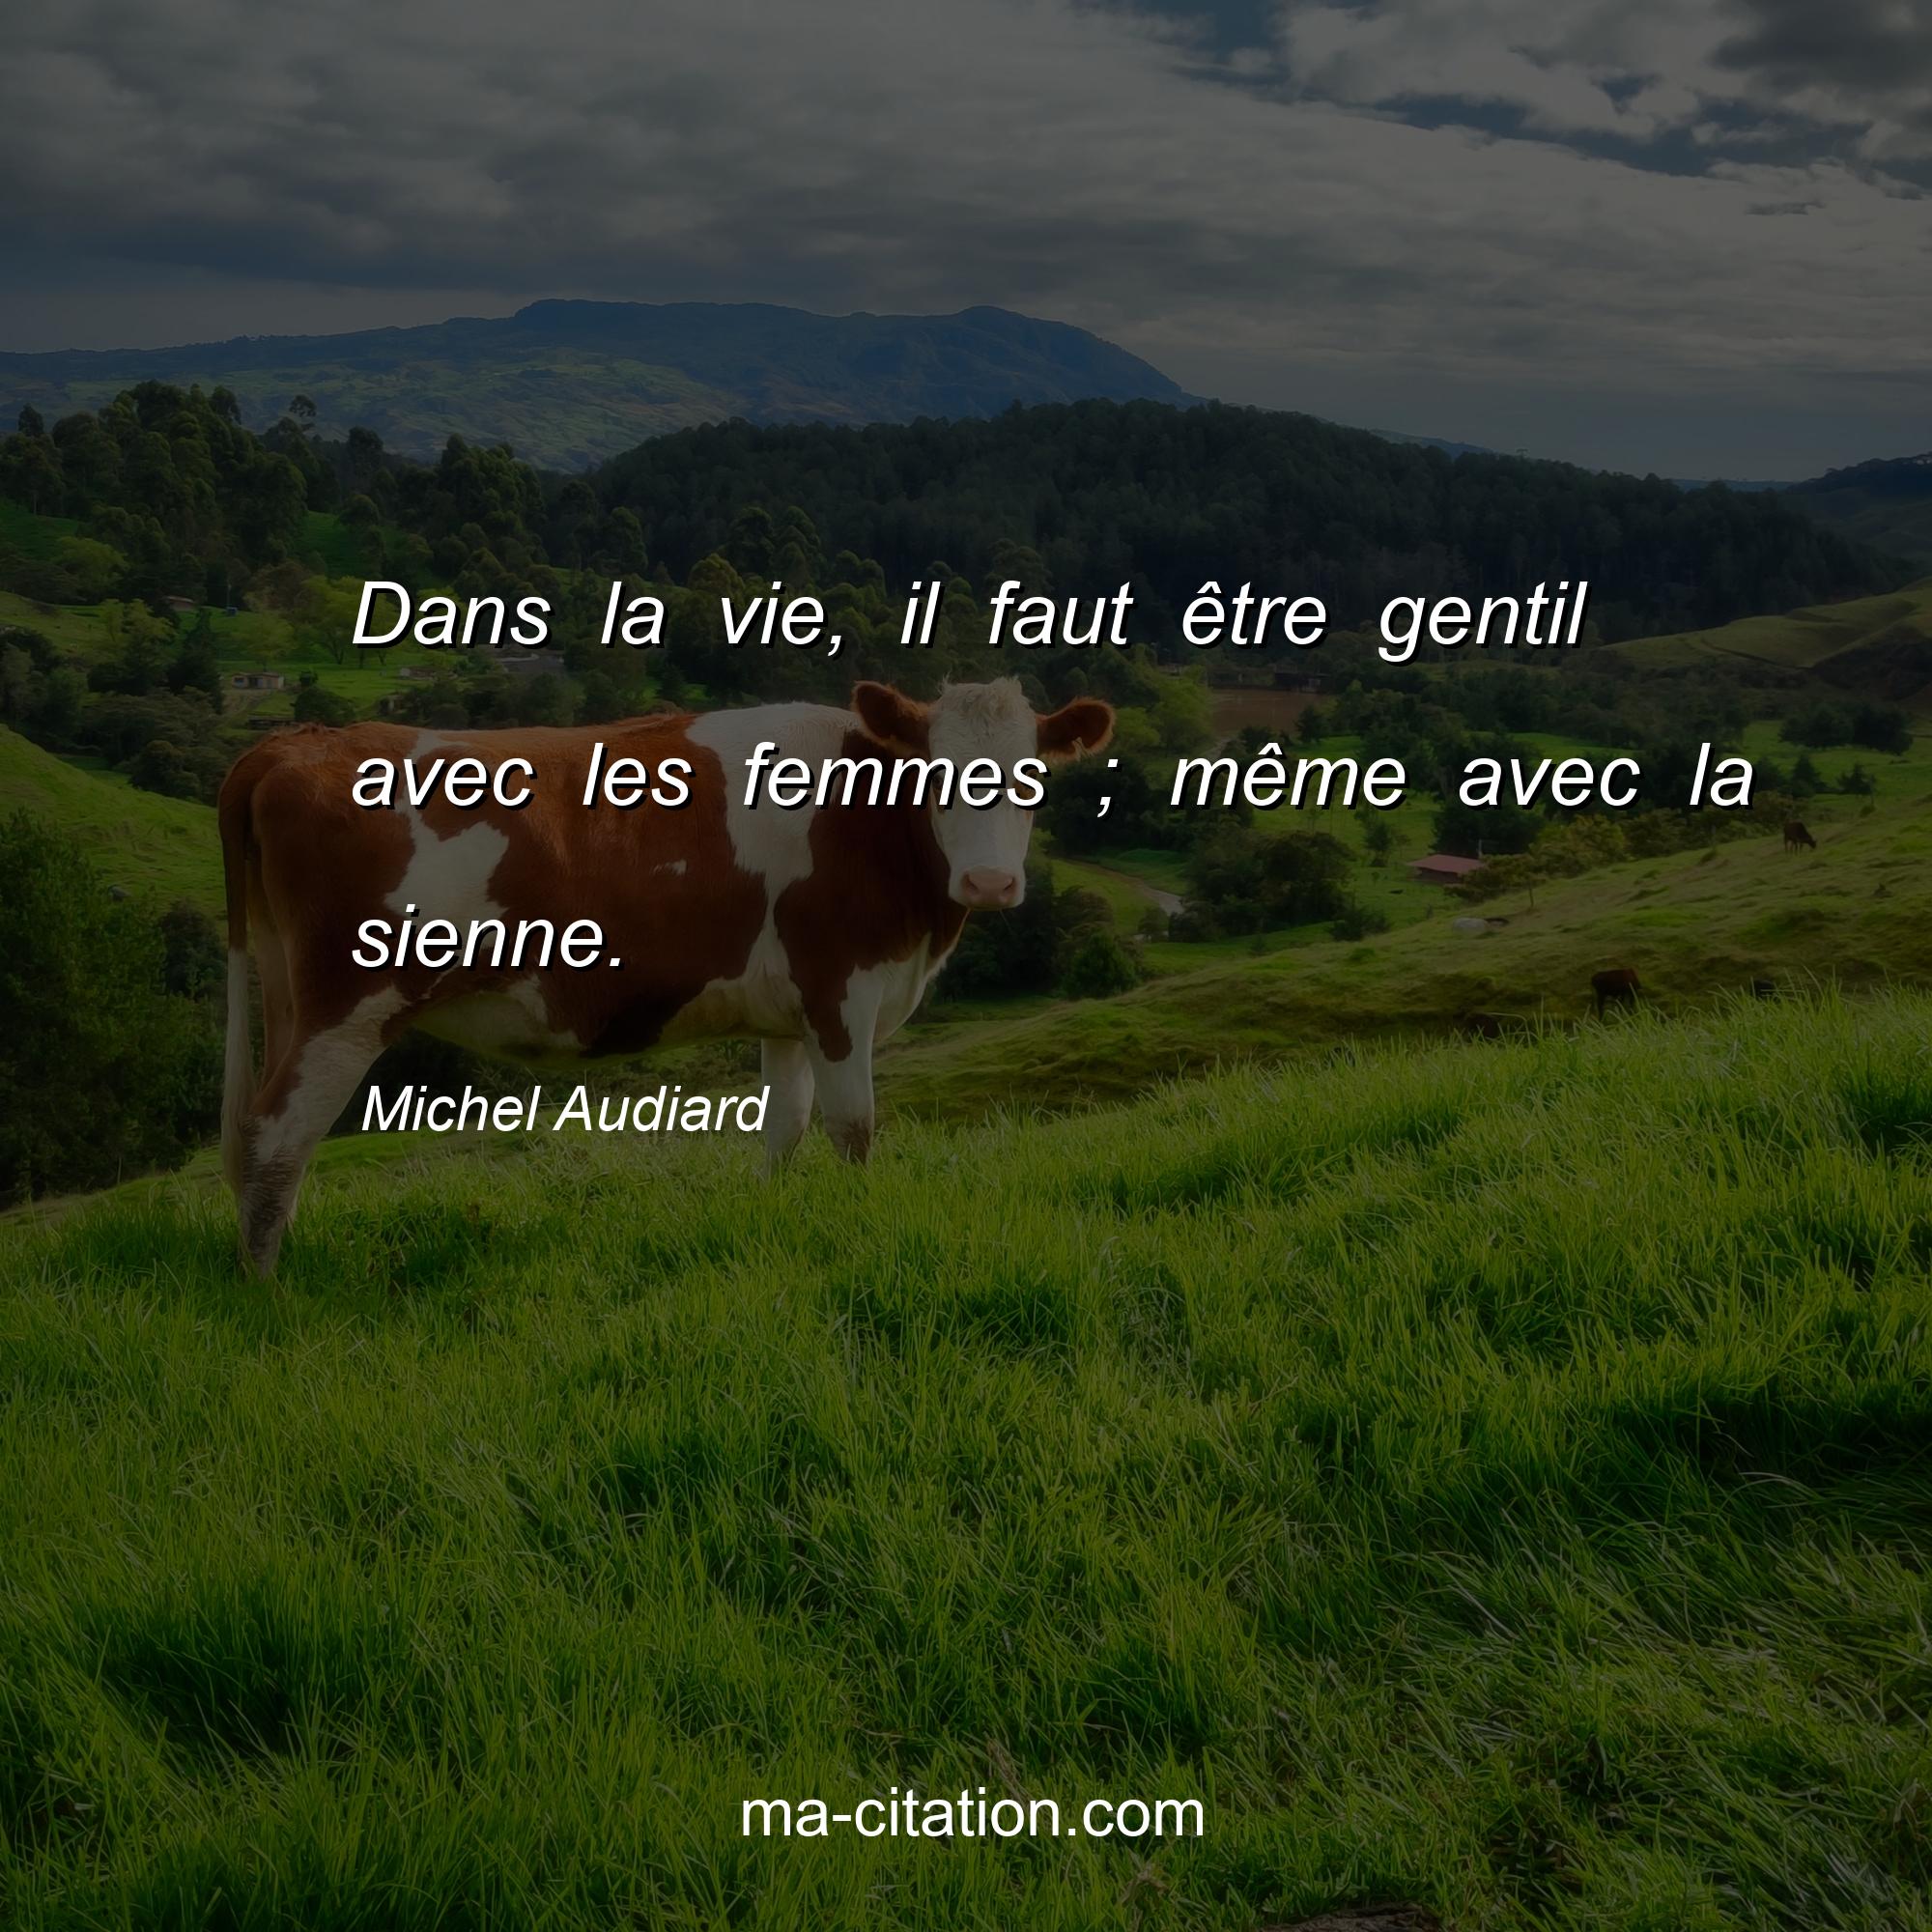 Michel Audiard : Dans la vie, il faut être gentil avec les femmes ; même avec la sienne.